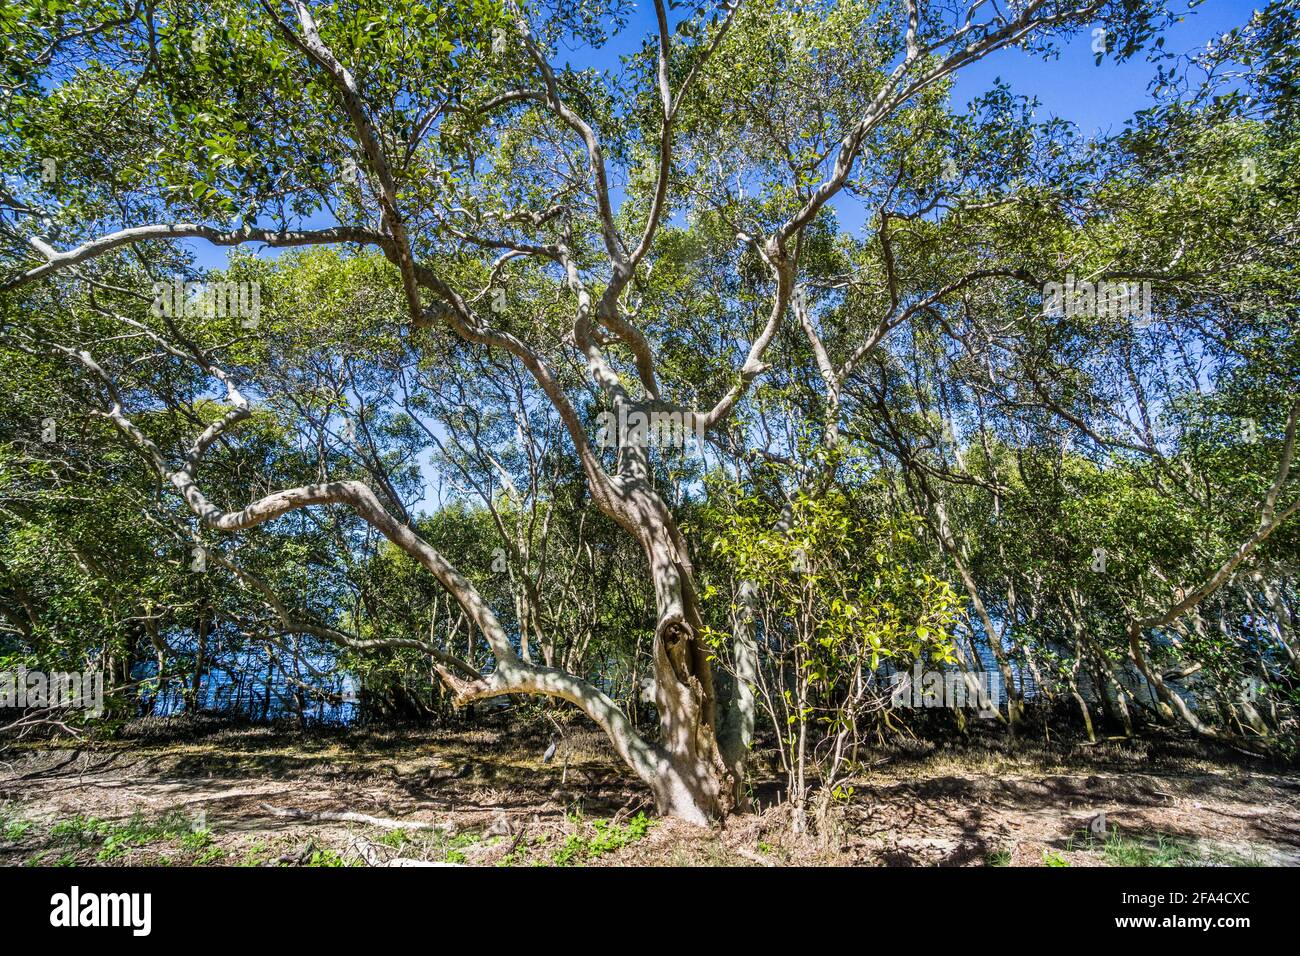 Papetières et mangroves sur les rives de la baie Moreton à la réserve environnementale de Godwin Beach, région de Moreton Bay, Queensland, Australie Banque D'Images